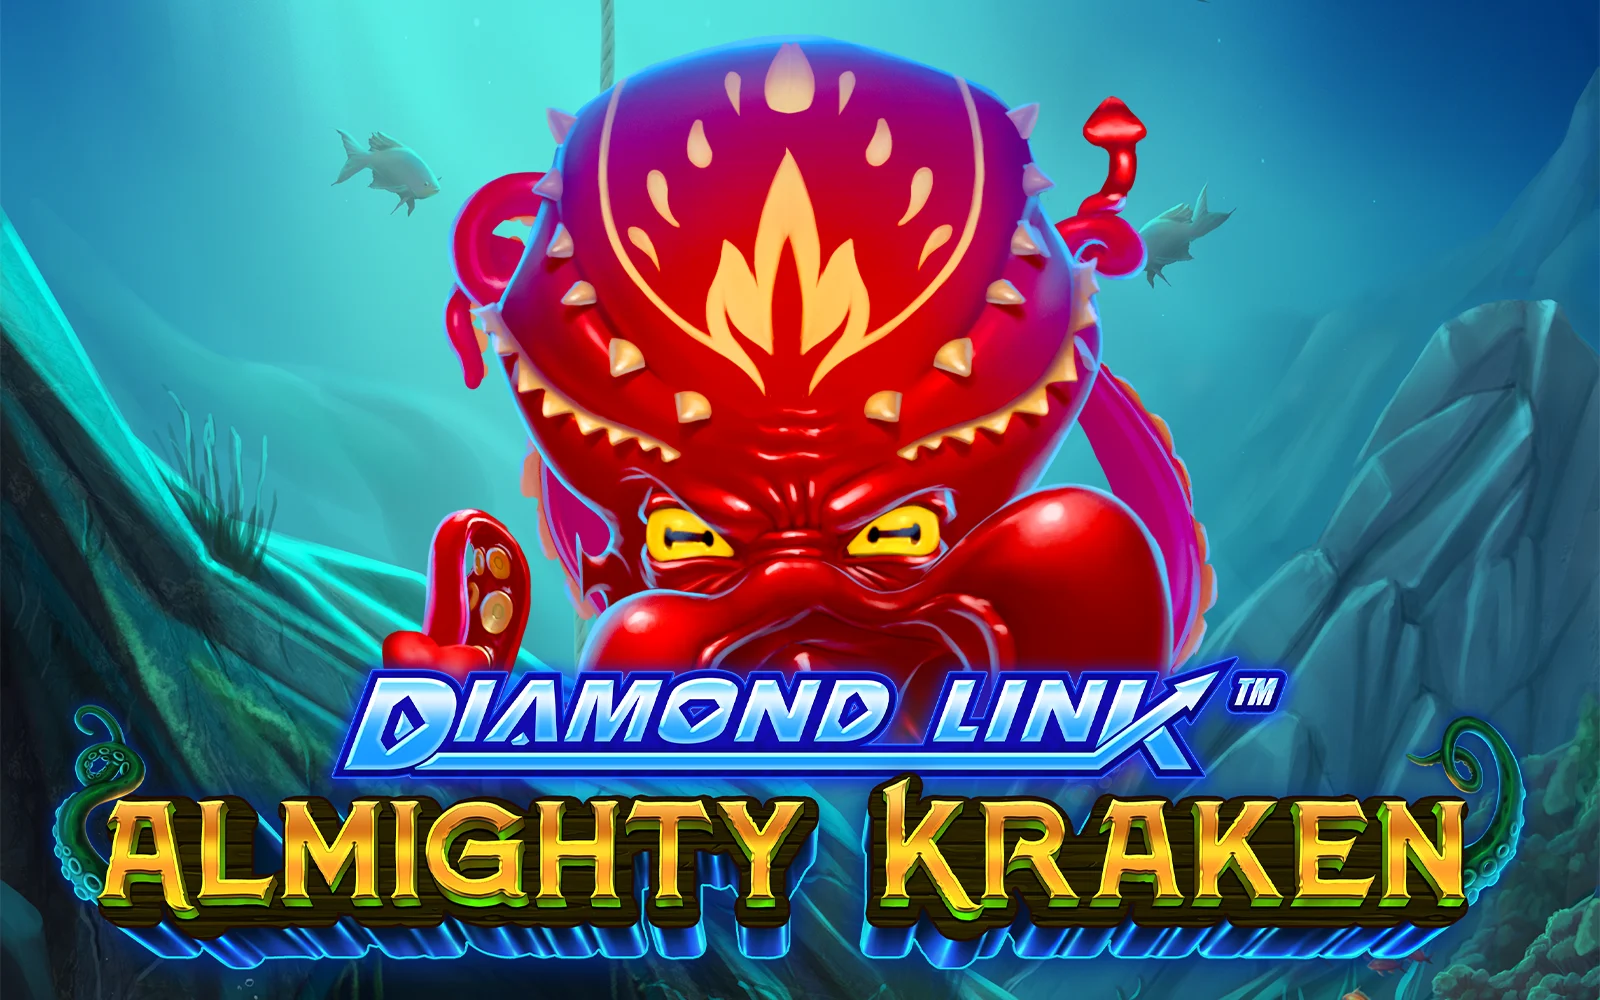 Joacă Diamond Link™ : Almighty Kraken în cazinoul online Starcasino.be